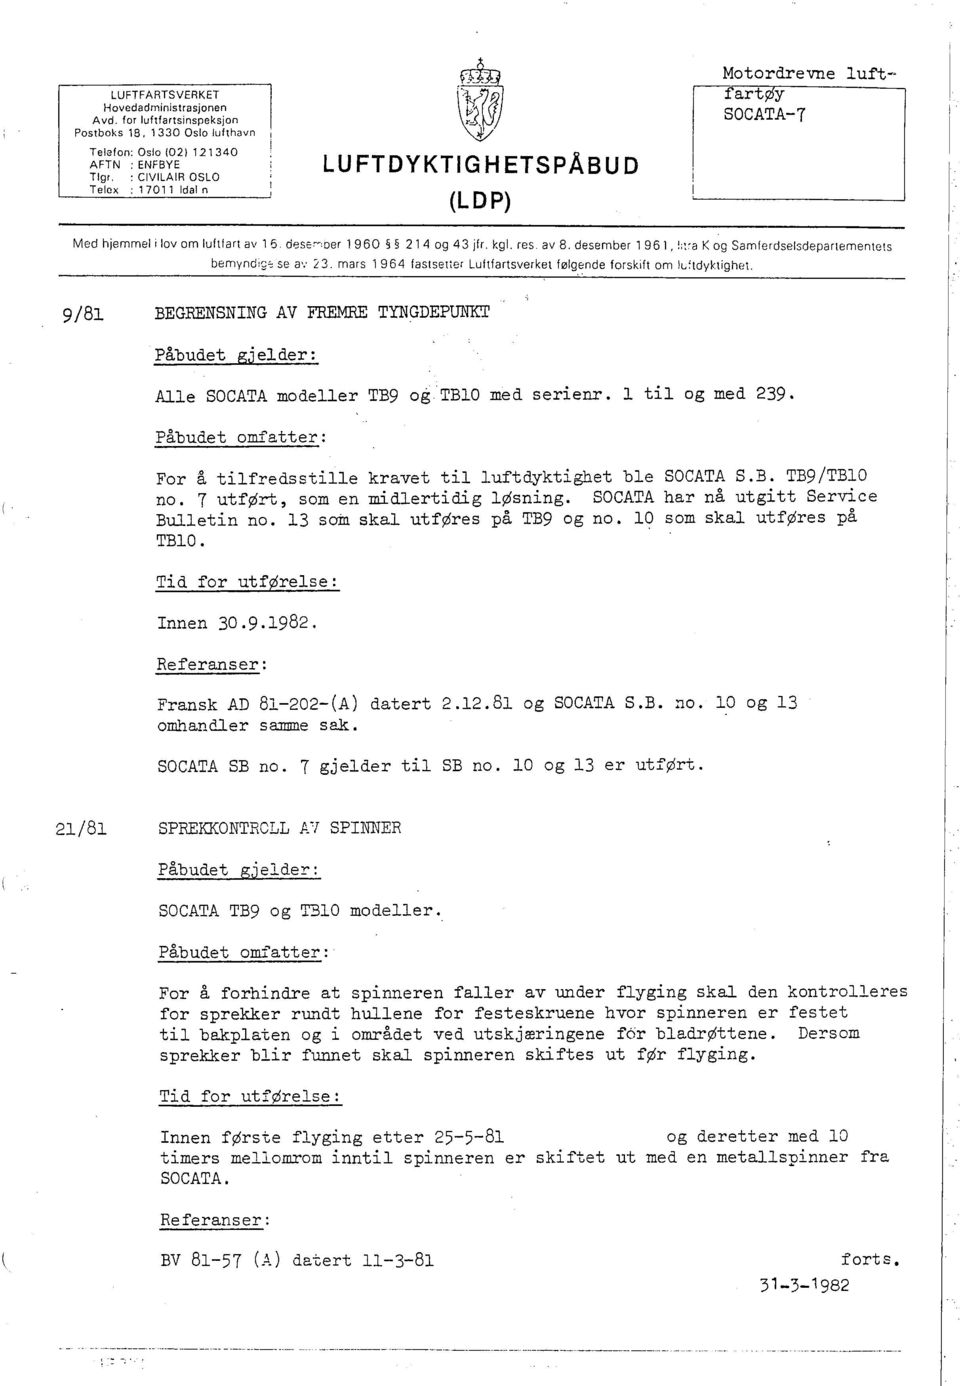 luftfart av 16 dese"''der 1960 214 og 43 jfr. kgl. res. av 8. desember 1961, ; :a K og Samferdselsdepartementets bemynd g~ se B': 3.